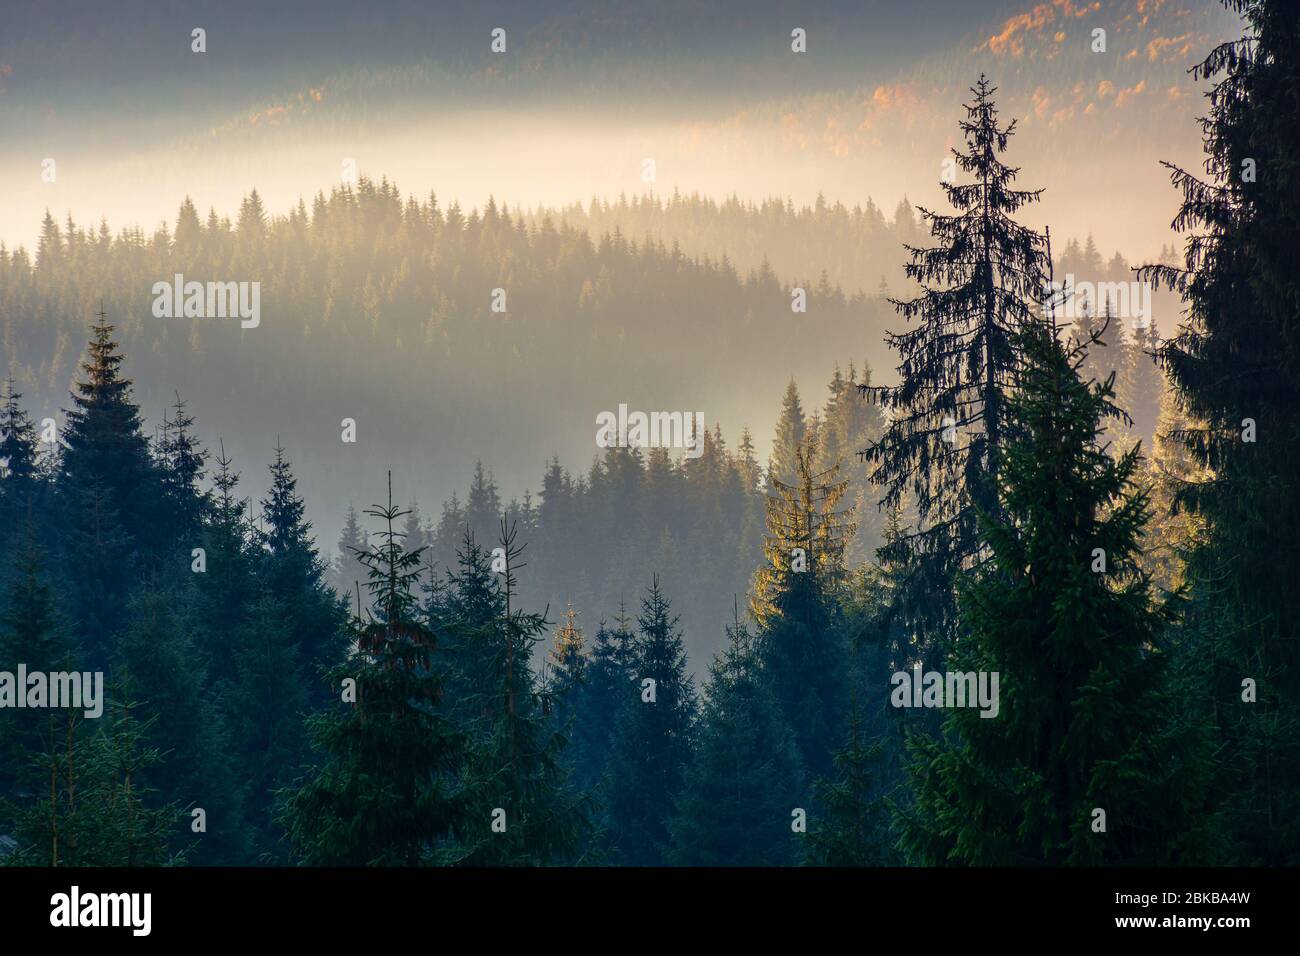 paysage forestier dans le brouillard. montagne derrière la brume lugueuse dans la vallée. arbres de pins silhouettes sur les collines devant un paysage ensoleillé d'automne Banque D'Images